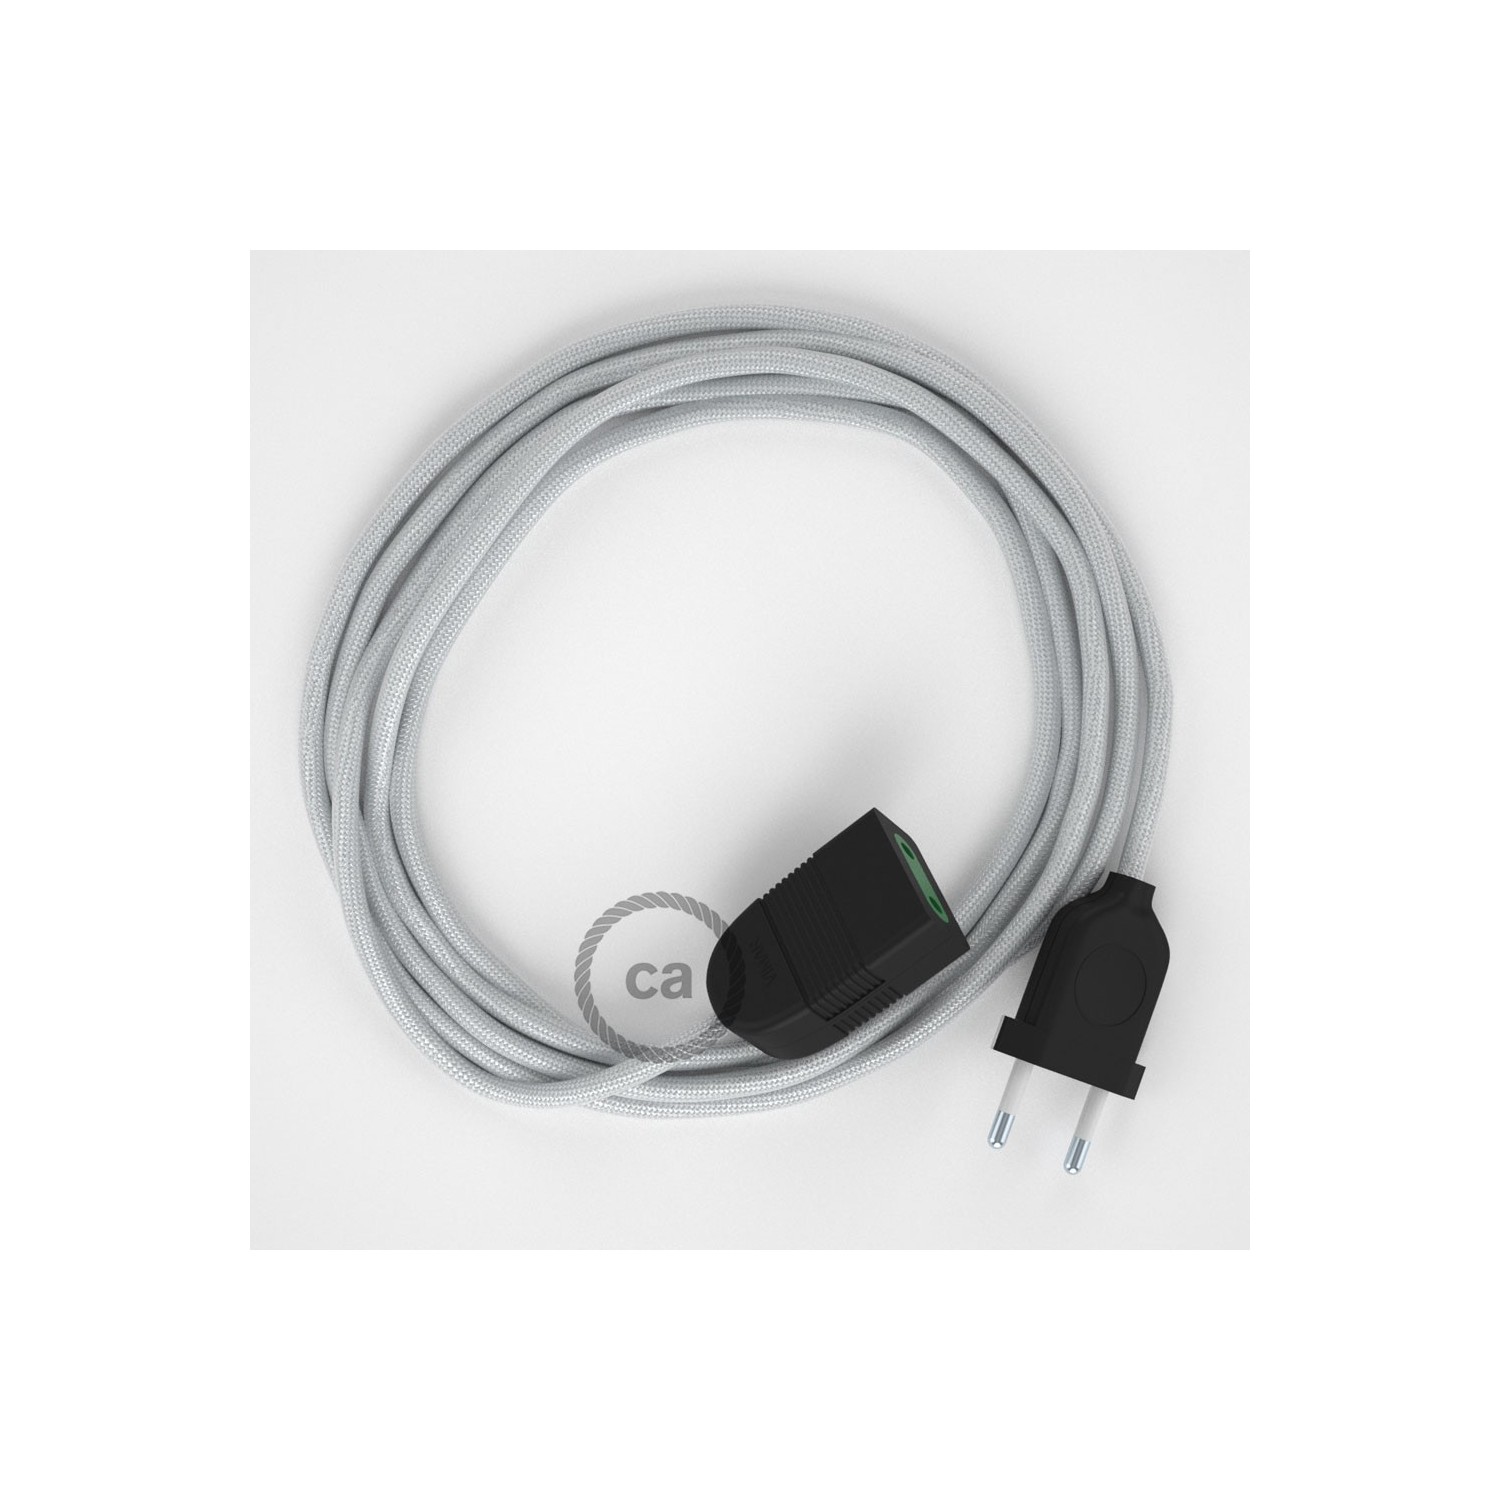 Produžni kabel za napajanje (2P 10A) Srebrni Rajon RM02 - Made in Italy